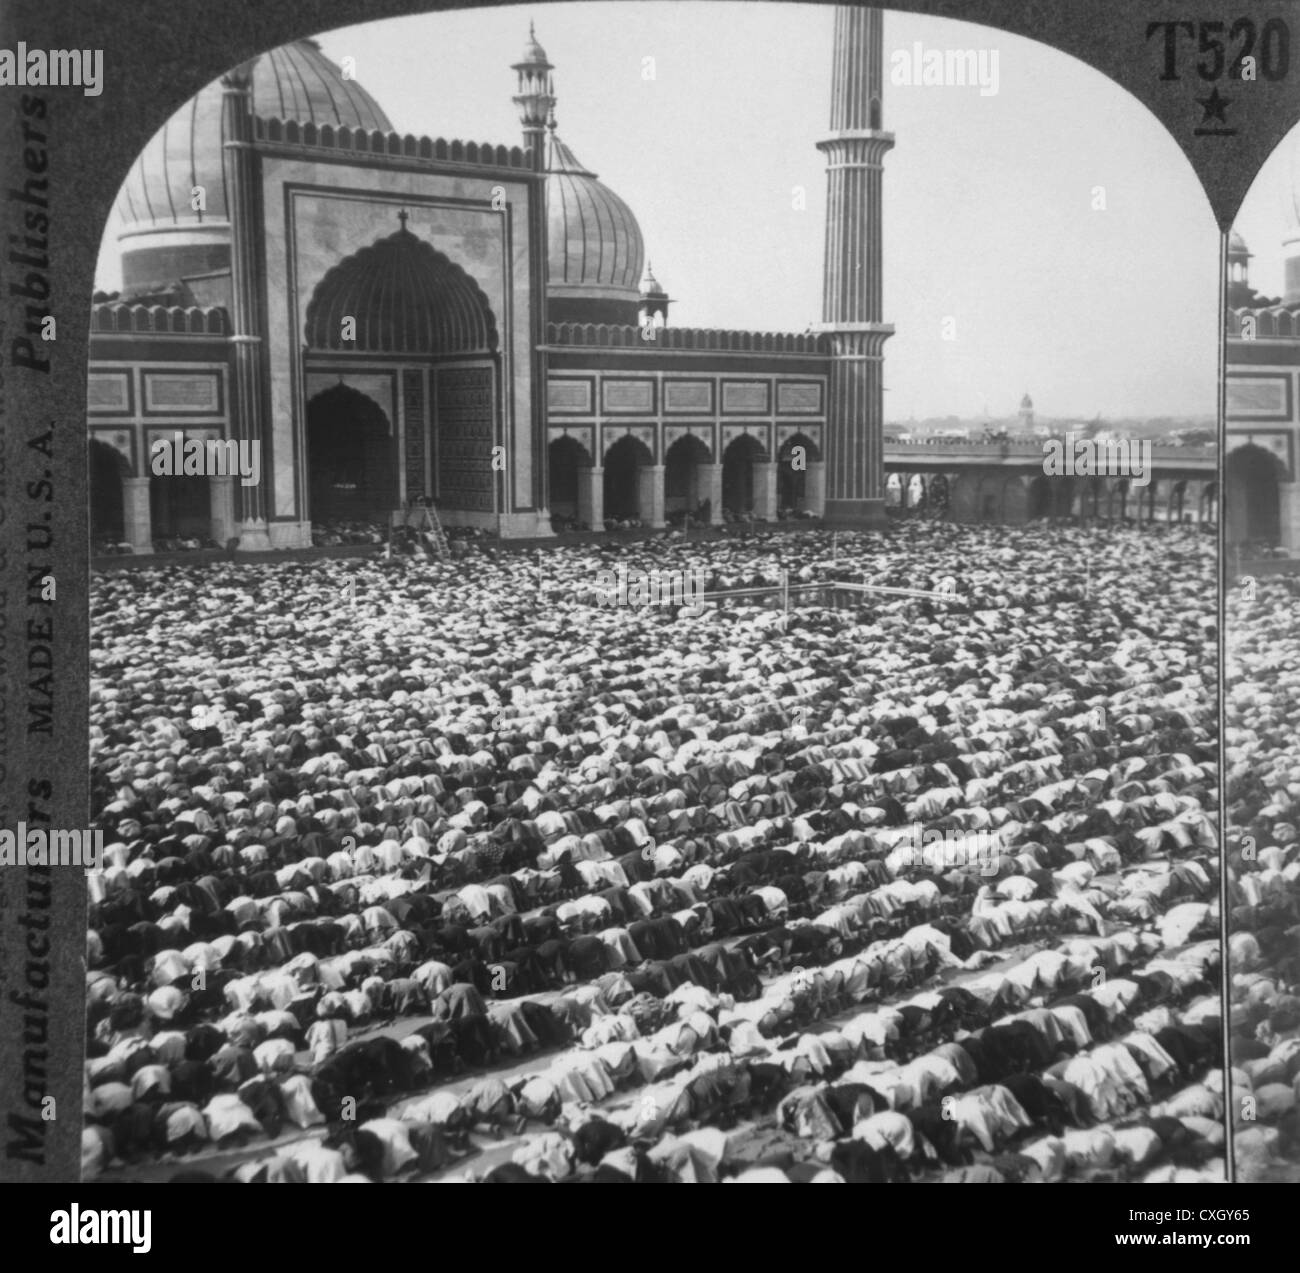 Musulmani alla preghiera, Jama Masjid moschea, Delhi, India, circa 1900 Foto Stock